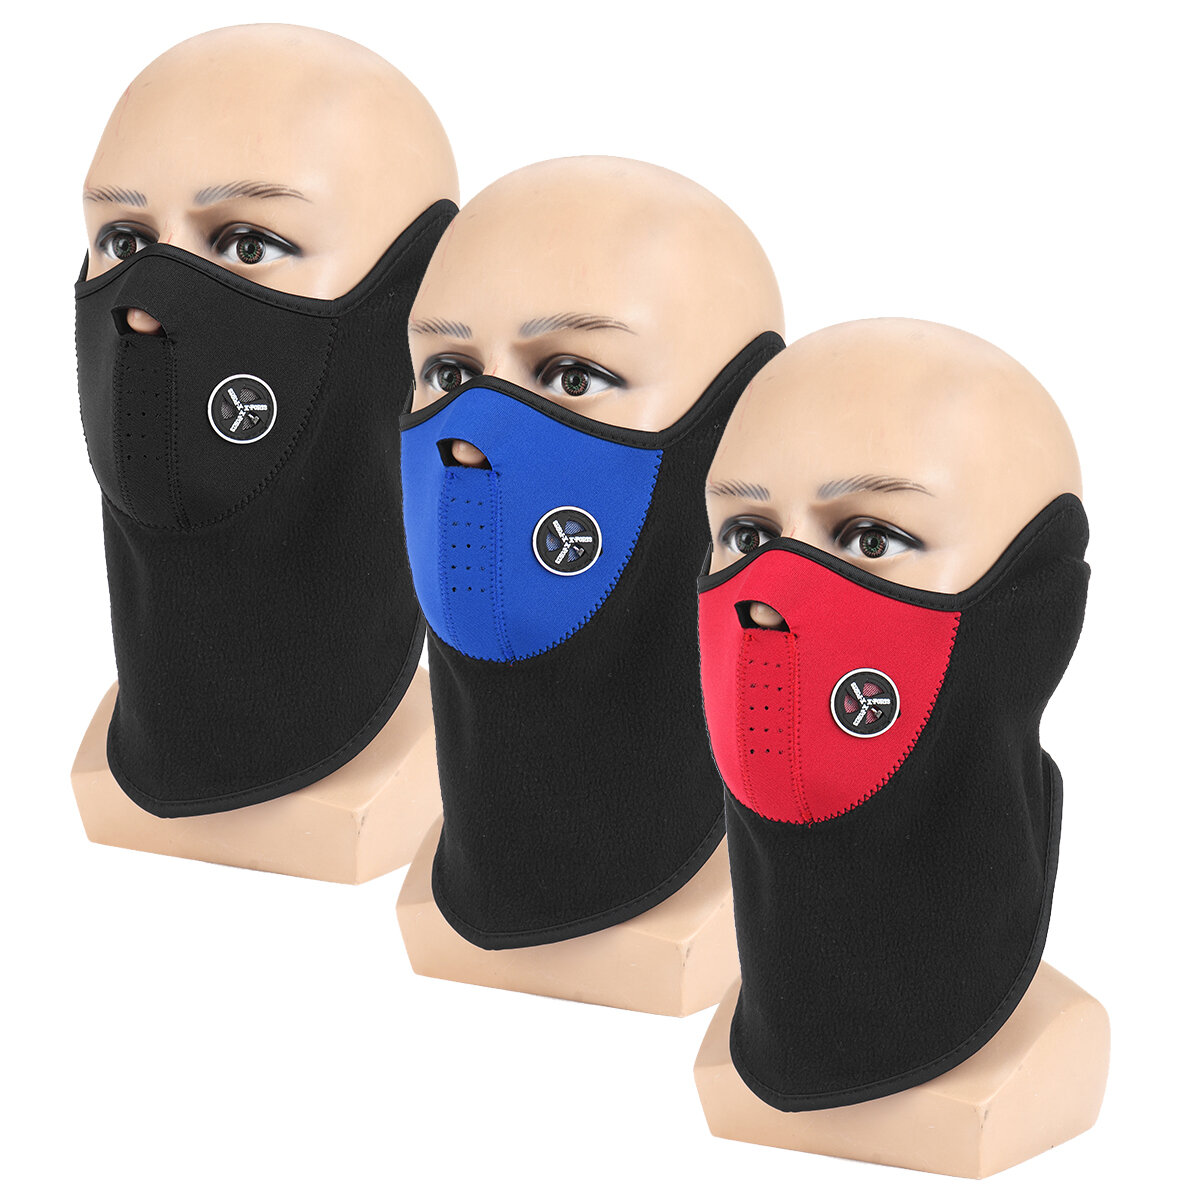 スキーやサイクリングなどの屋外ウィンタースポーツに最適な、厚手のネックウォーマー付きの3色の防風半面マスク。